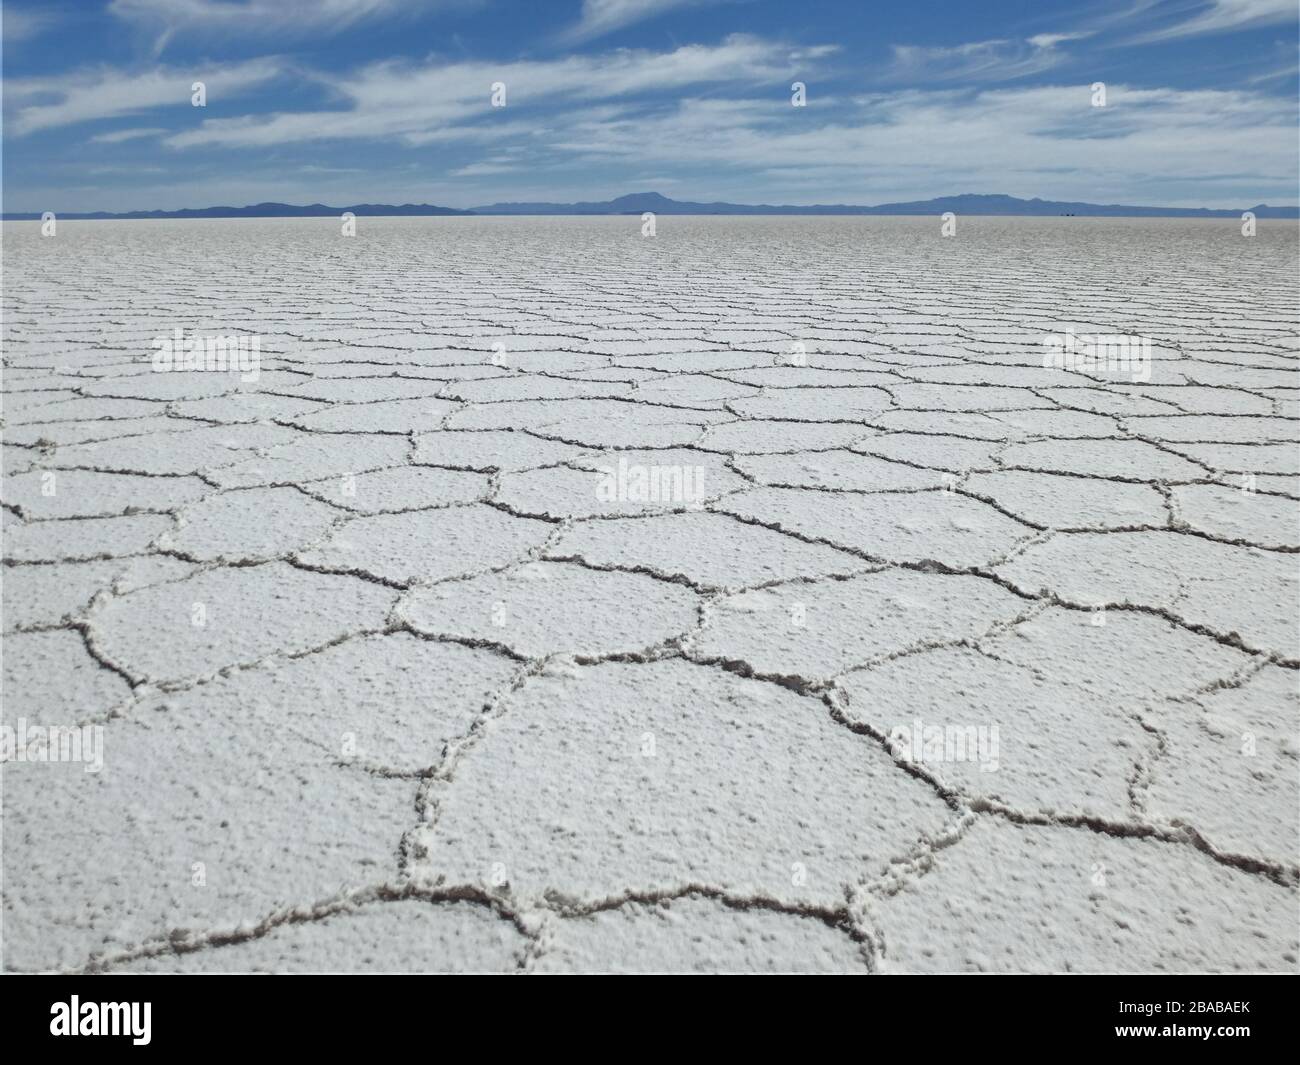 Salar de uyuni - großer Salzsee mit Salzpfanne und Salzkruste, der zur Salzgewinnung in einem nationalpark in Bolivien, Südamerika, verwendet wird Stockfoto